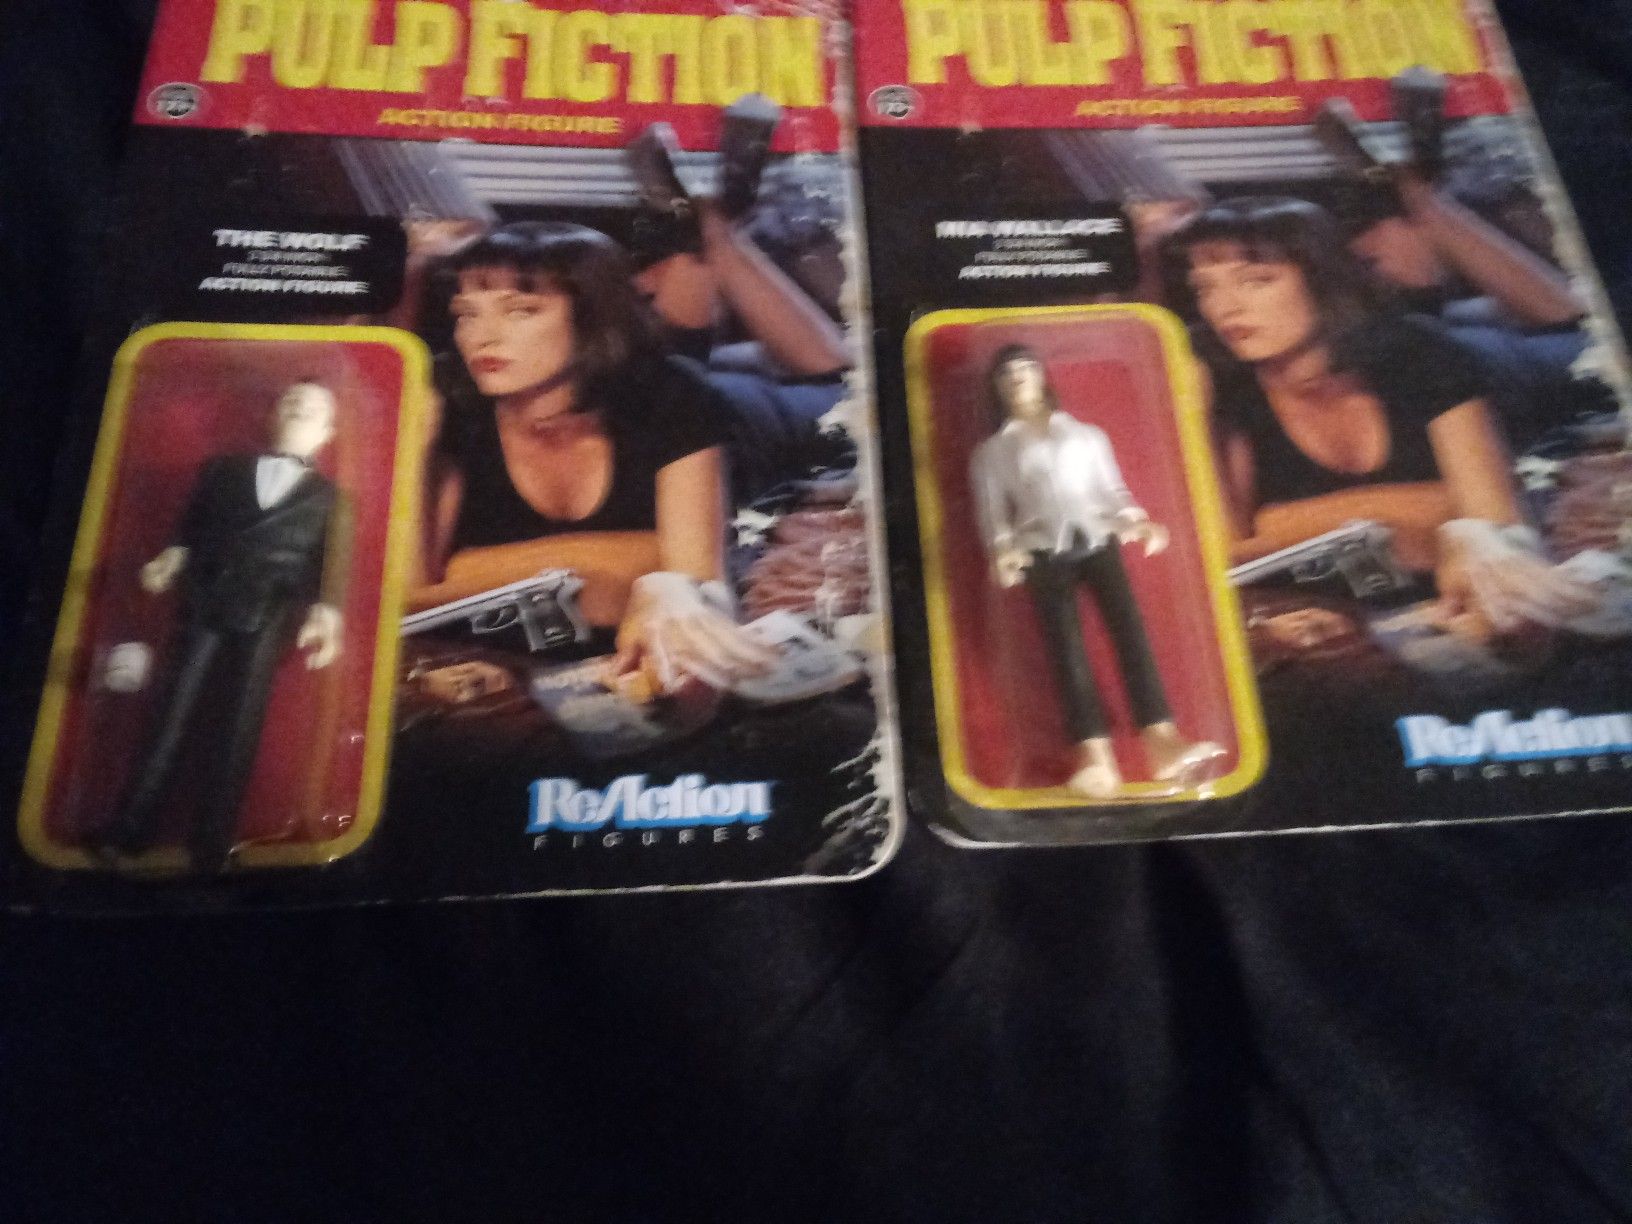 Pulp Fiction action figures